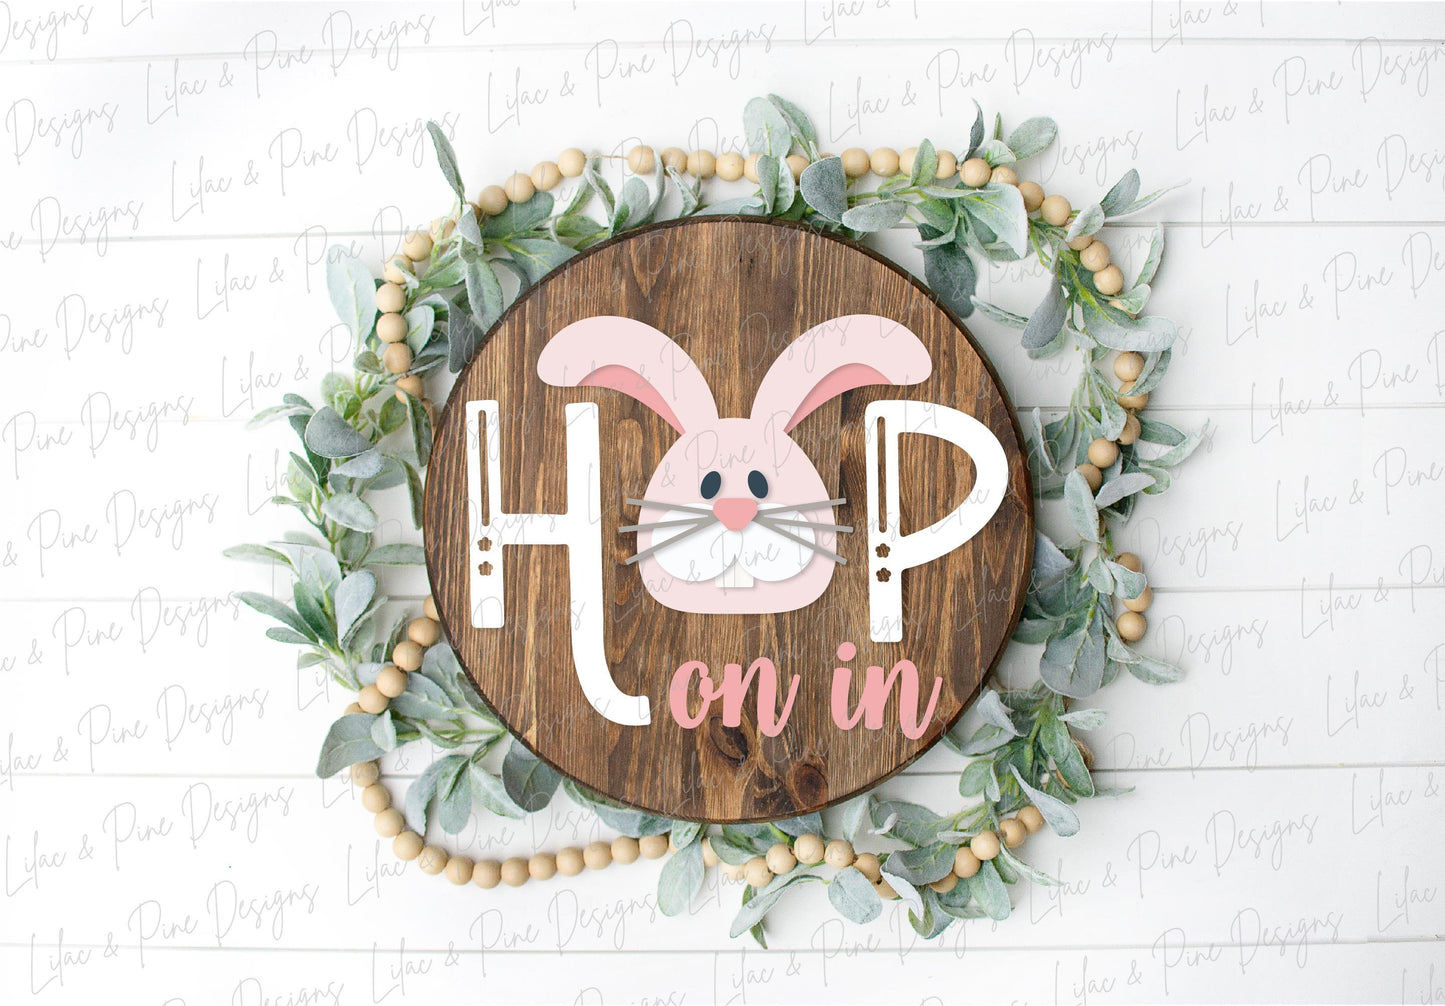 hop on in sign SVG, Easter bunny door hanger, rabbit Welcome SVG, cute Easter decor, spring laser template, Glowforge SVG, laser cut file